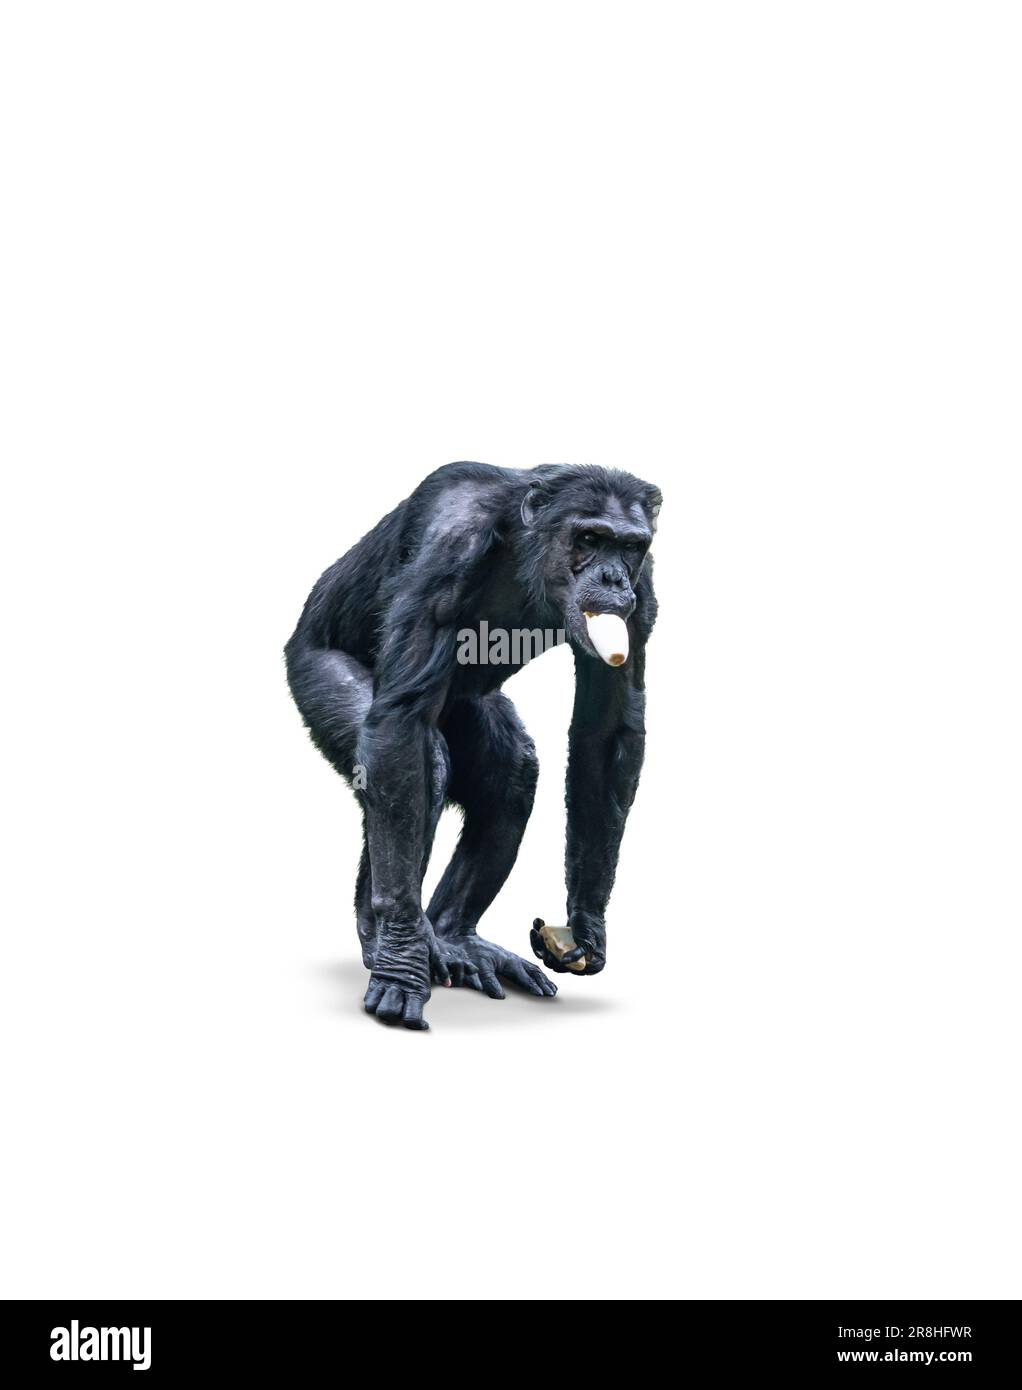 Singe chimpanzé mangeant des légumes, isolé sur fond blanc. Banque D'Images